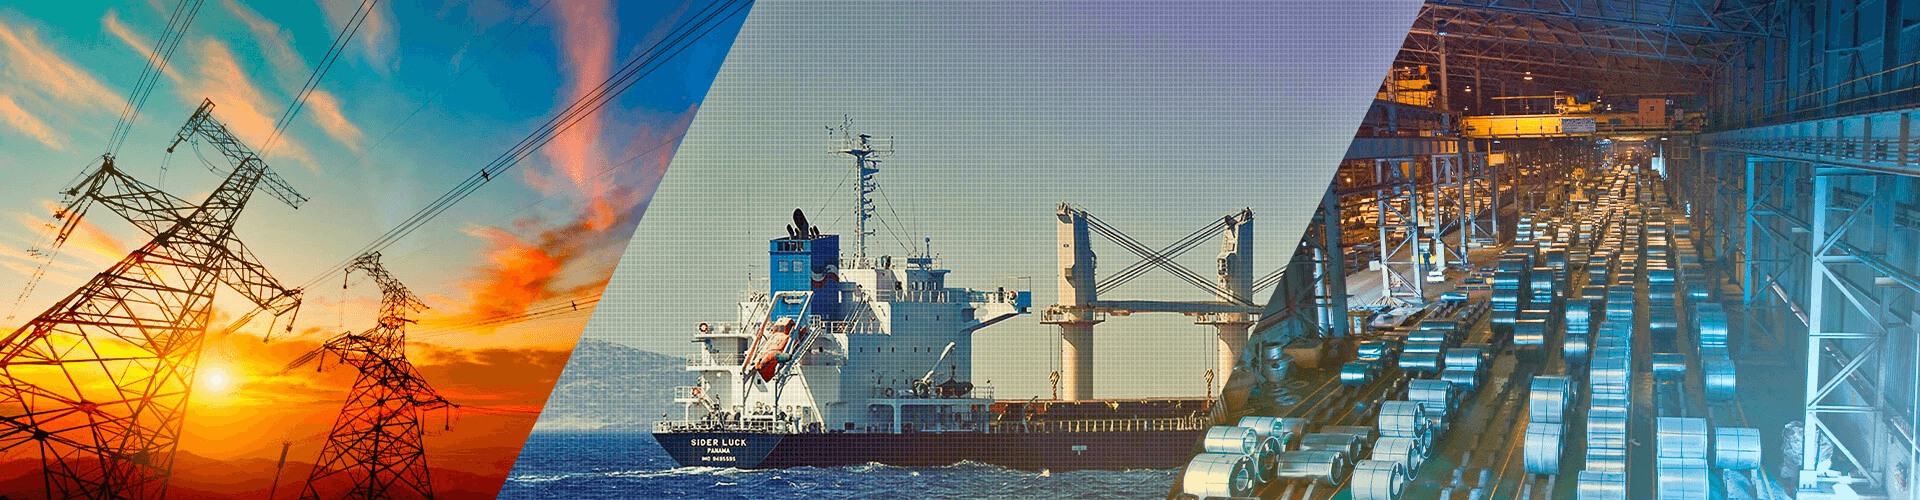 Imagem de linhas de transmissão de energia, de um navio e de uma linha de montagem.